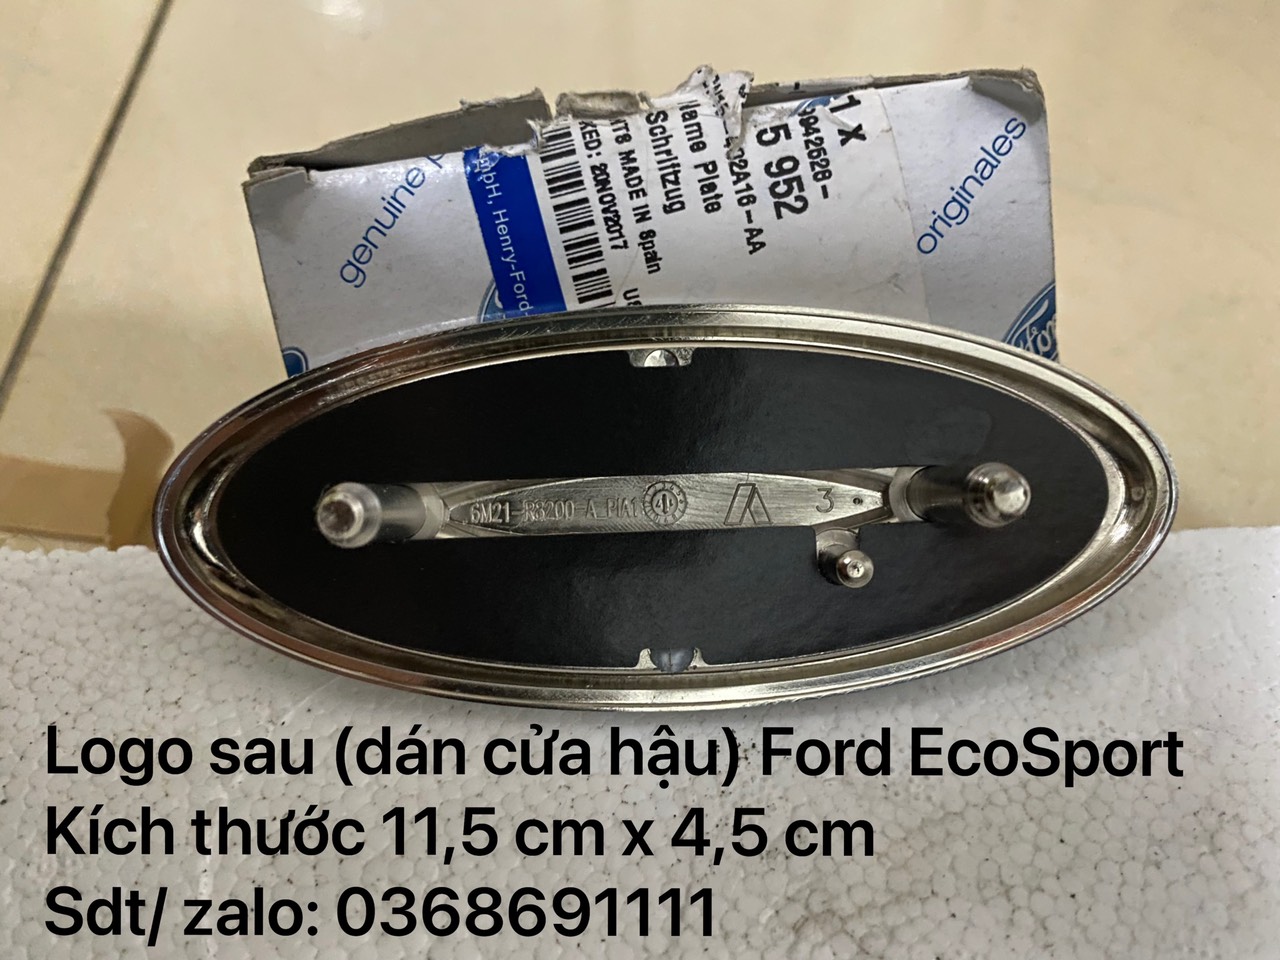 Lô gô sau, biểu tượng chữ Ford trên cánh cửa hậu Ford EcoSport / CN15402A16AA3